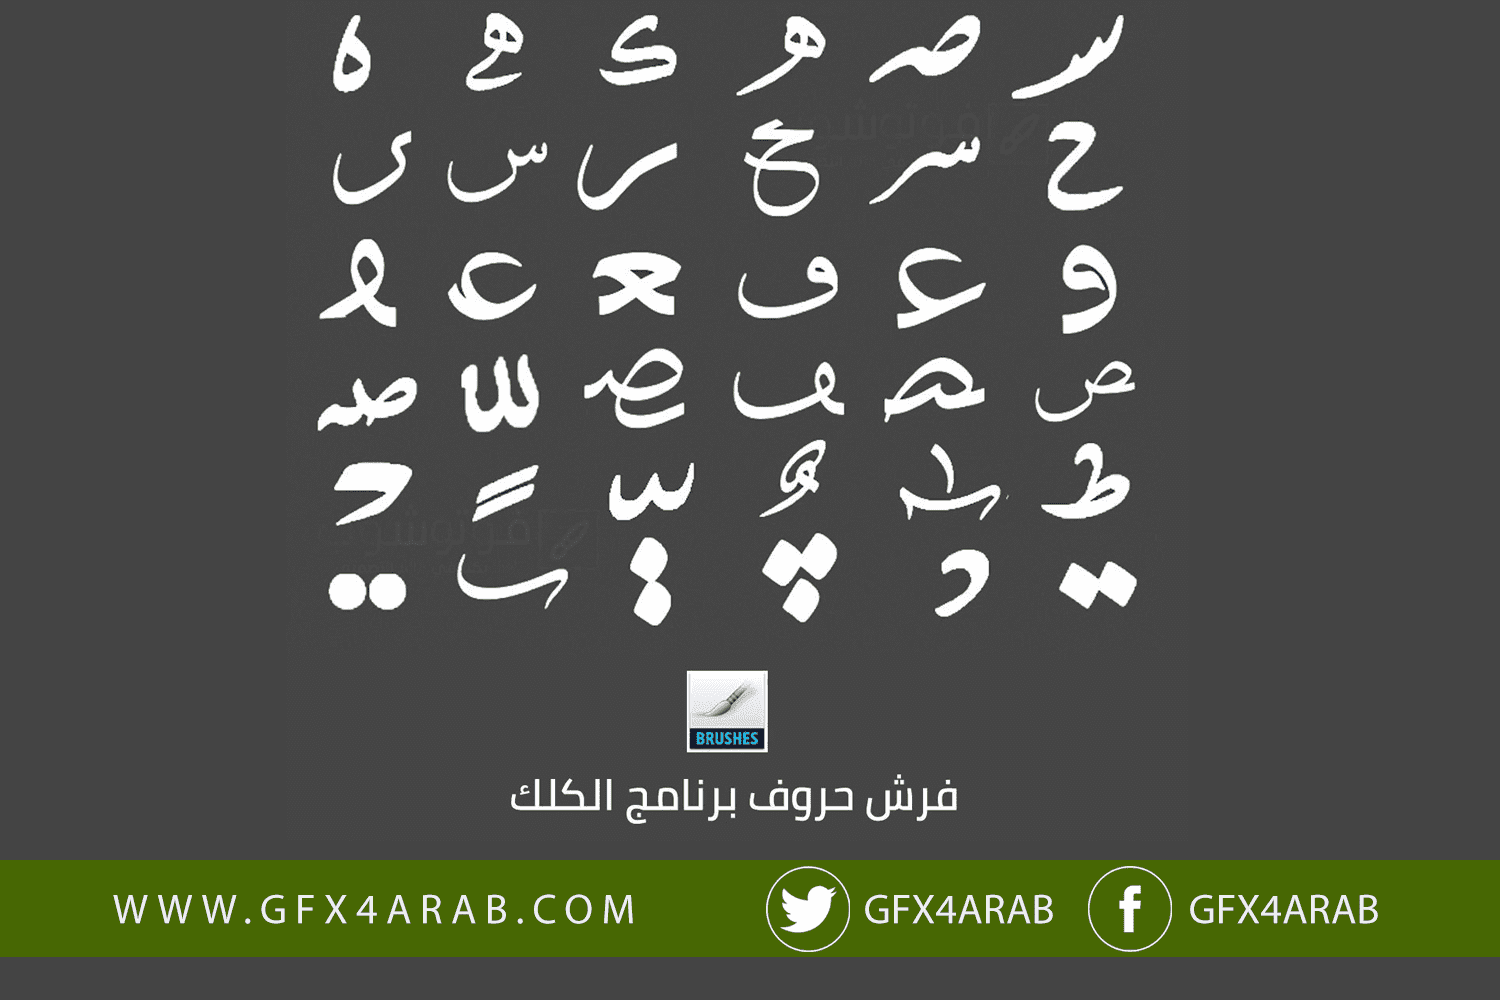 ملف فيه الحروف العربية جاهزة لتكوين مخطوطة تبرز تصاميمك Gfx4arab Free Fonts Vector Photos Psd Fils